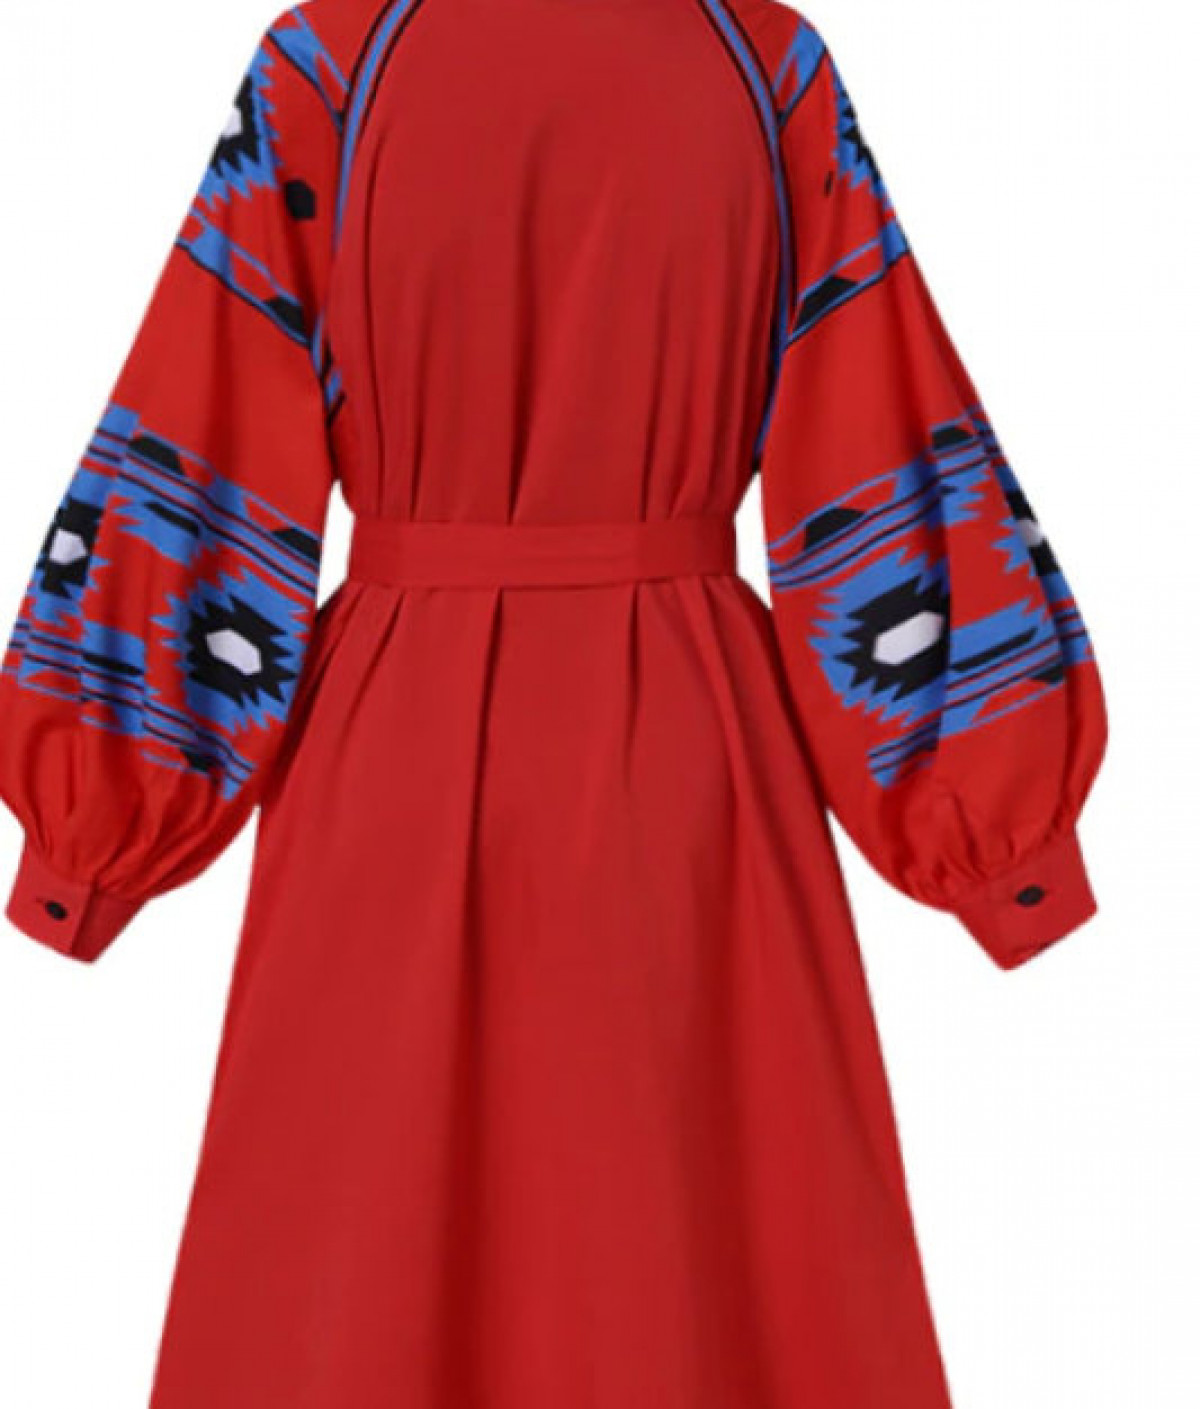 sukienka czerwona  z chwostami